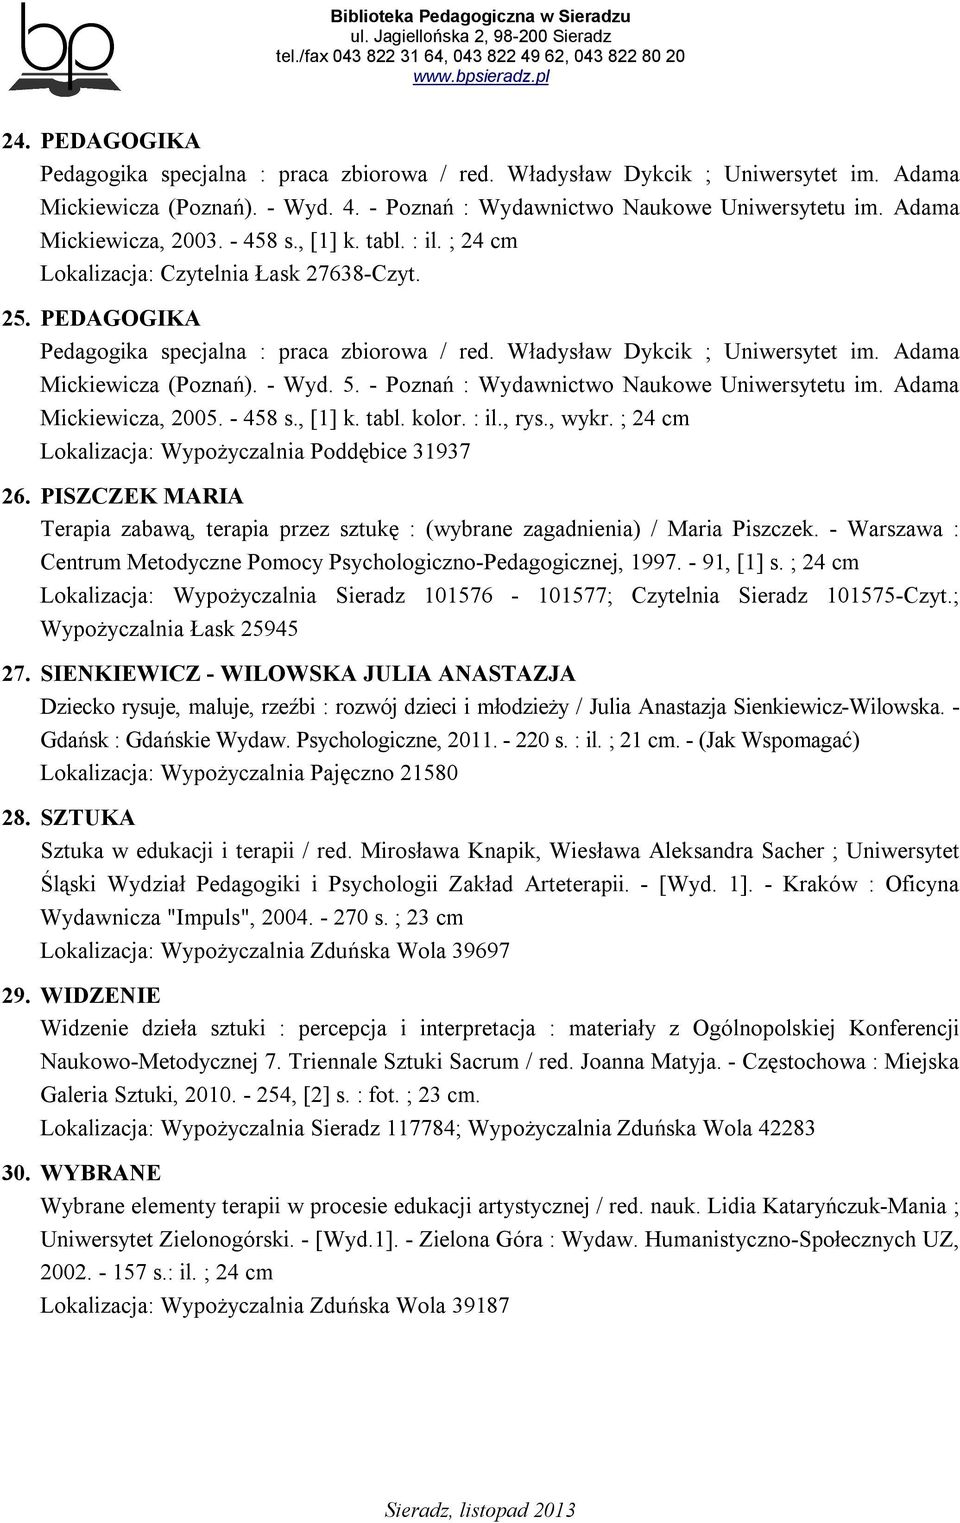 Adama Mickiewicza (Poznań). - Wyd. 5. - Poznań : Wydawnictwo Naukowe Uniwersytetu im. Adama Mickiewicza, 2005. - 458 s., [1] k. tabl. kolor. : il., rys., wykr.